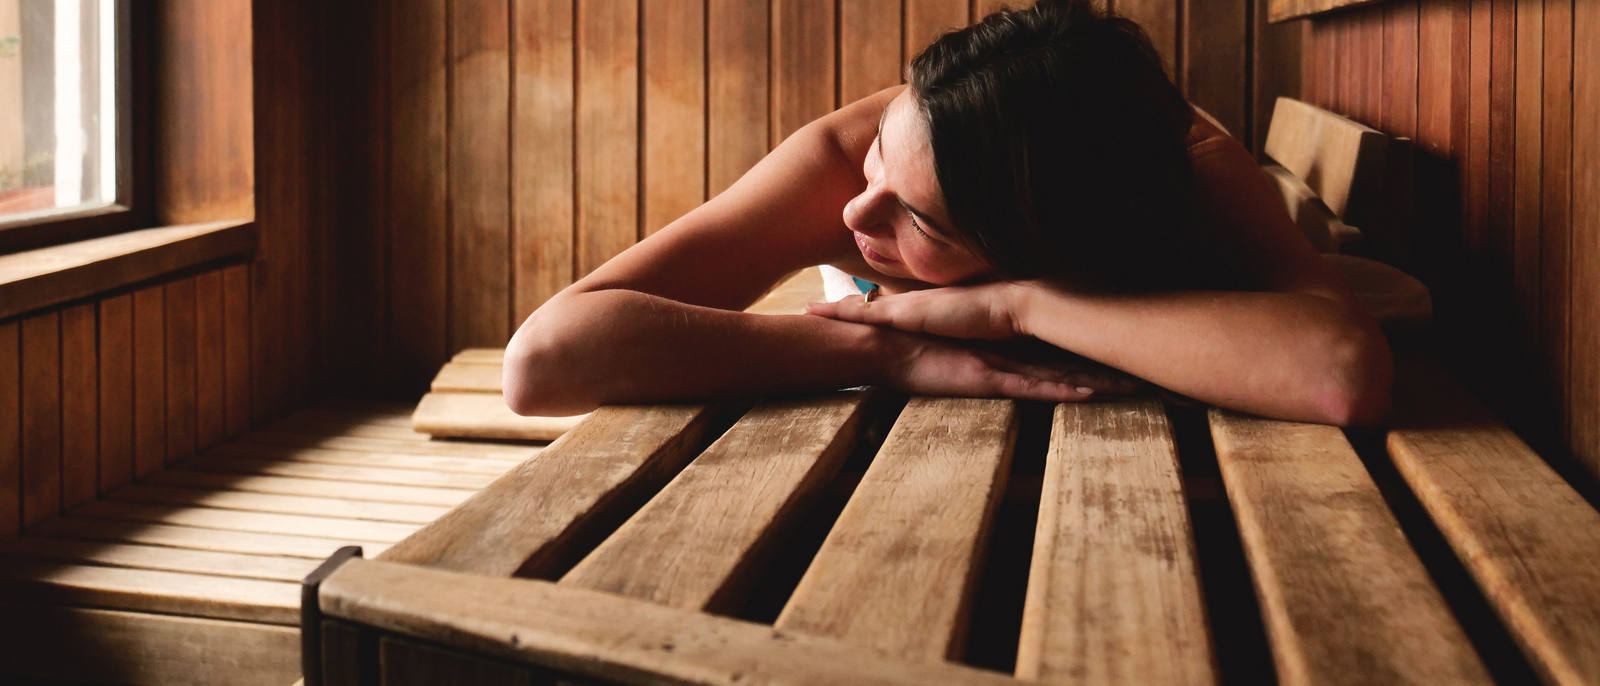 Ist Sauna gesund?